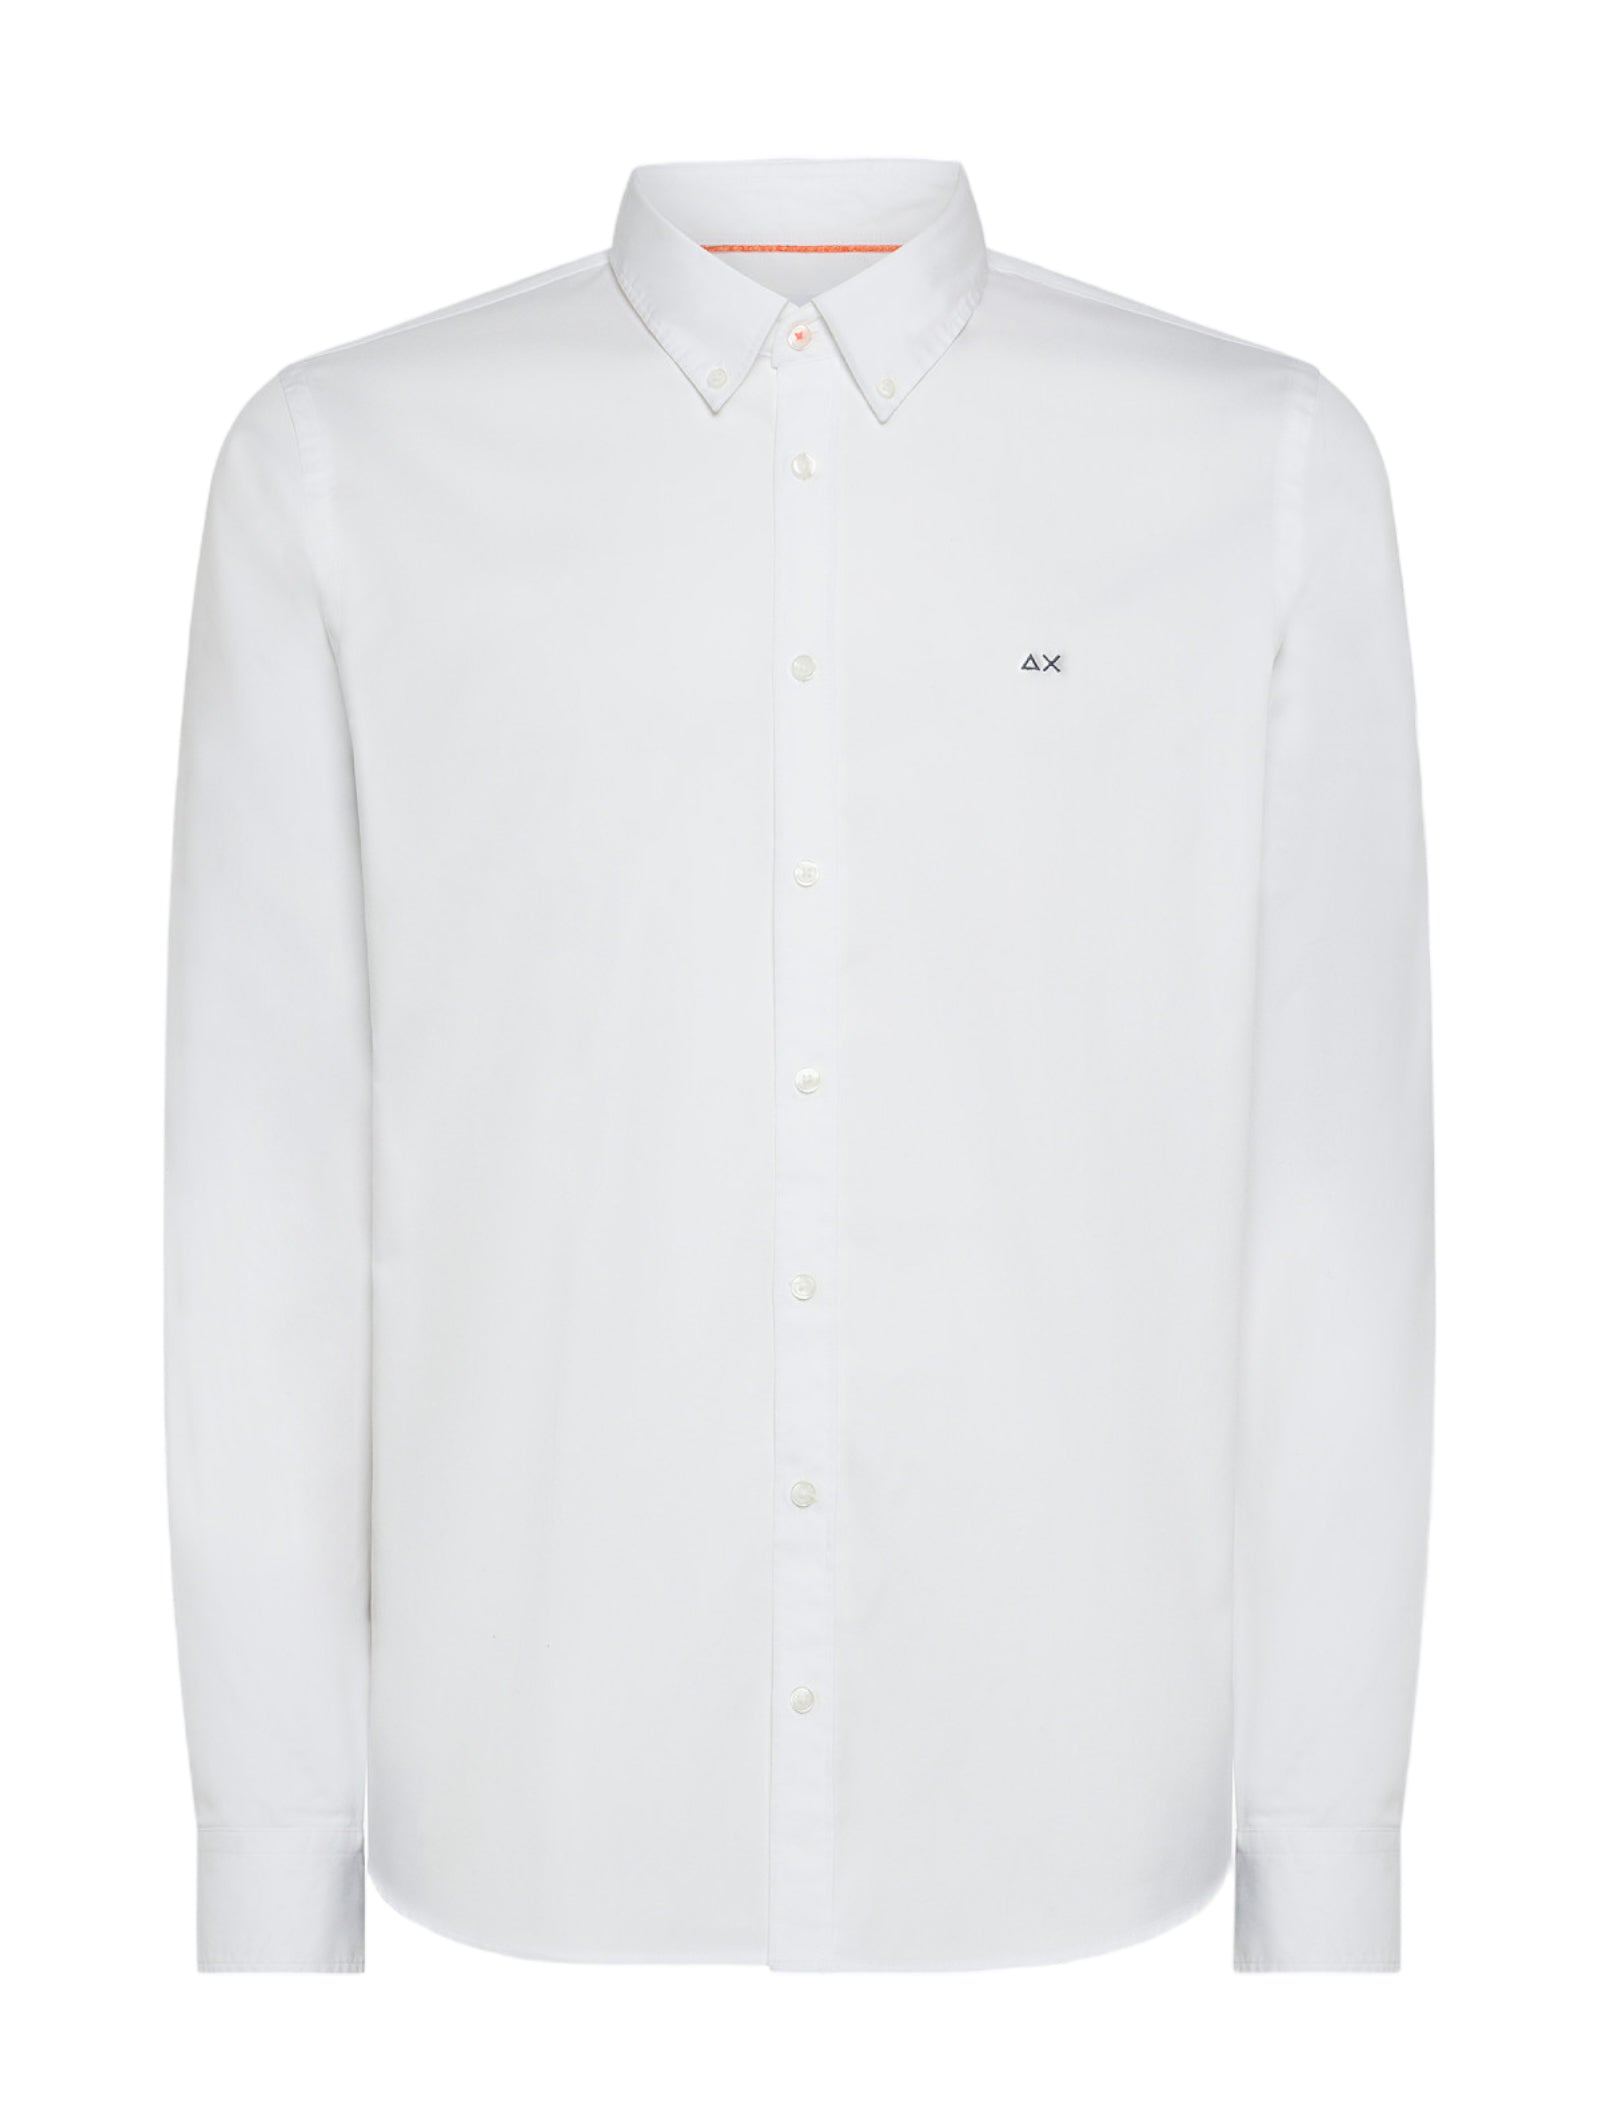 Sun68 Shirt S43101 Cream White